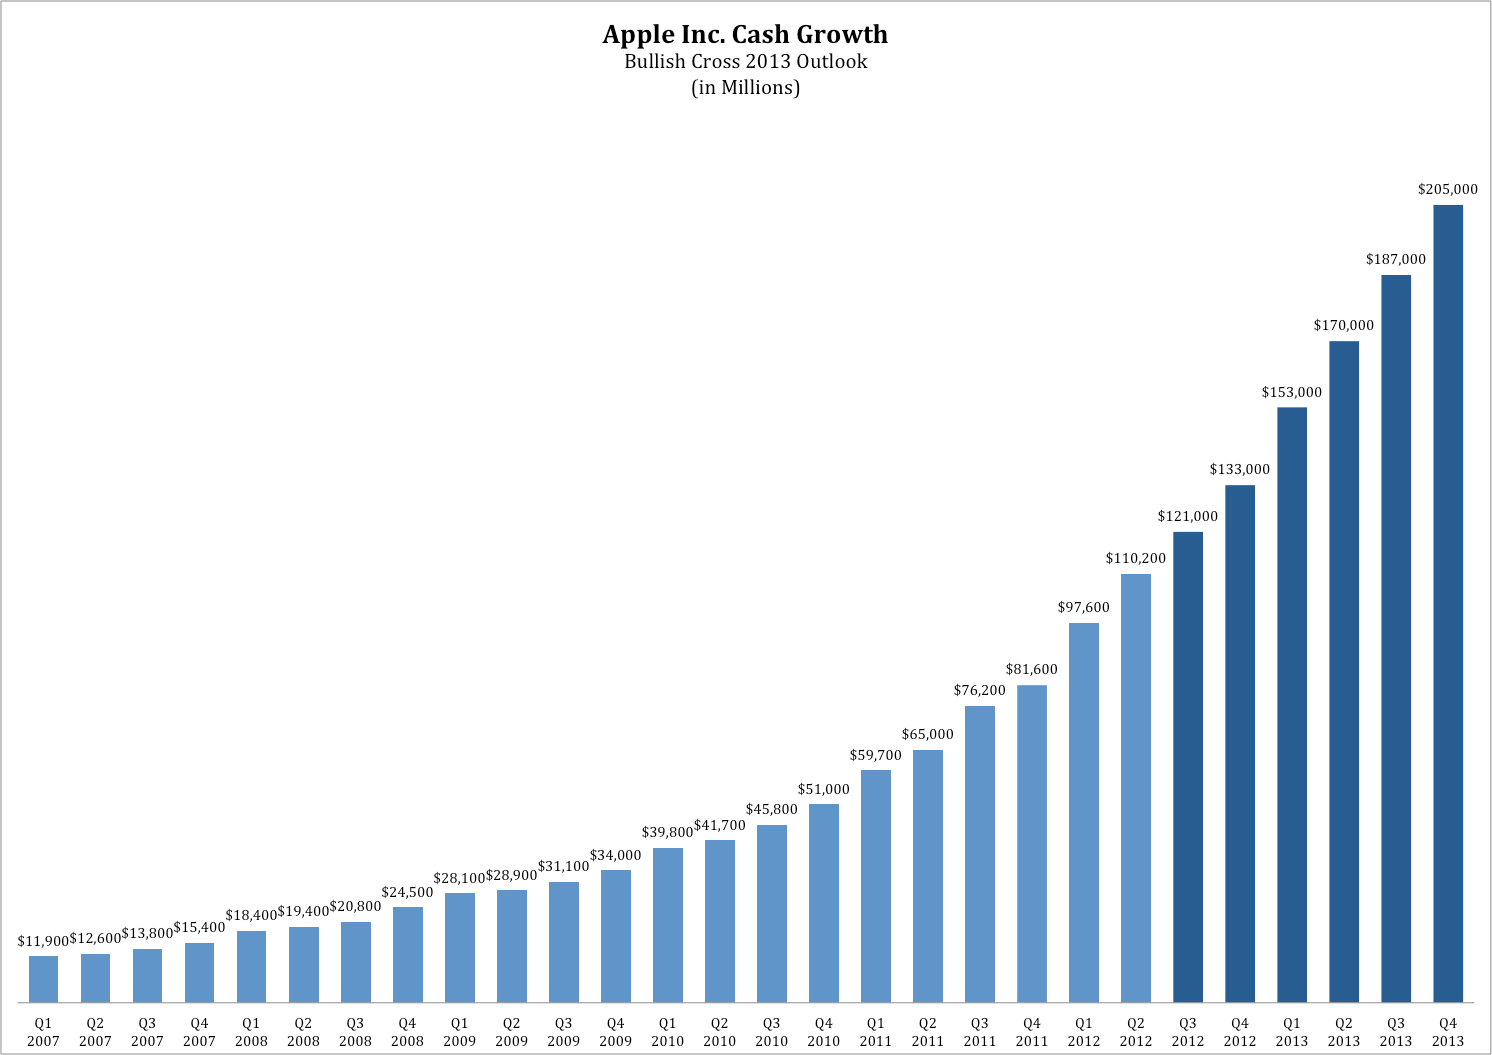 Gráfico sobre o fluxo de caixa da Apple